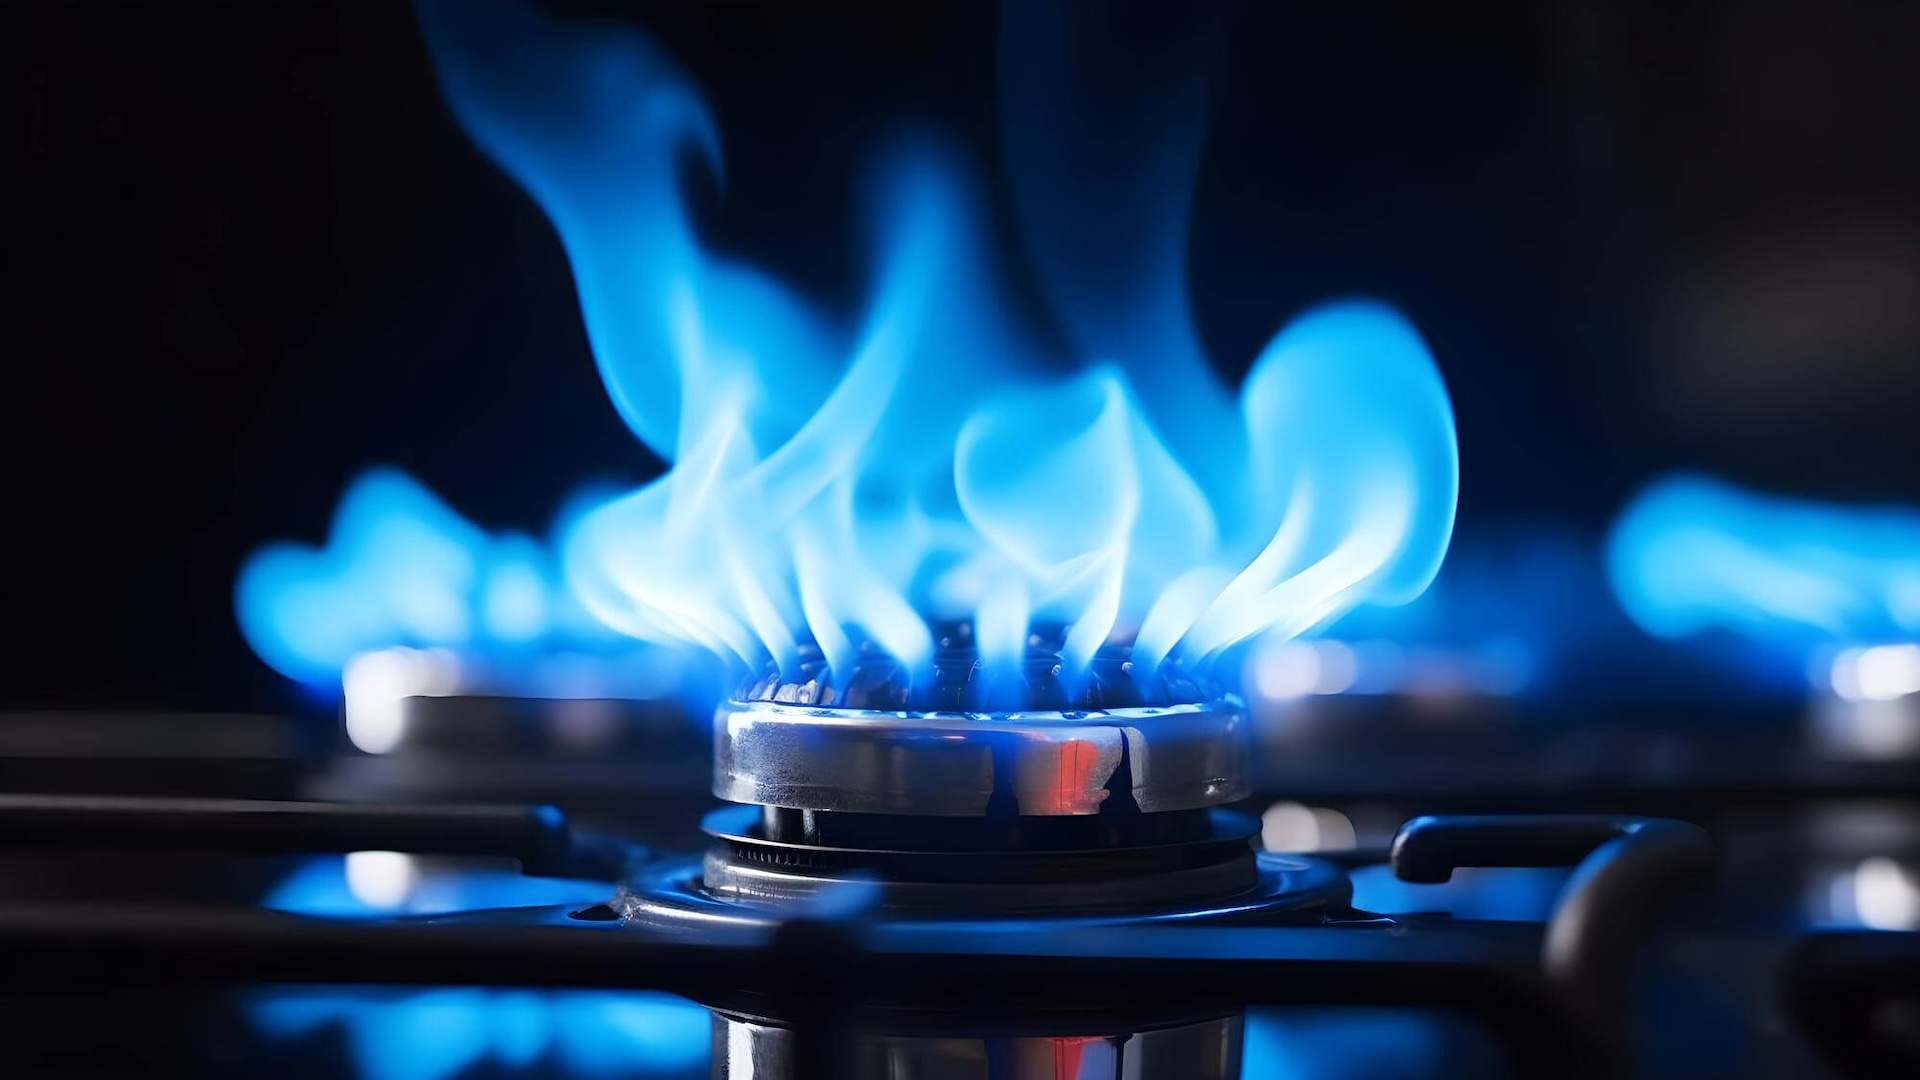 A gáz kék lángja természetes és tökéletes égést jelez.